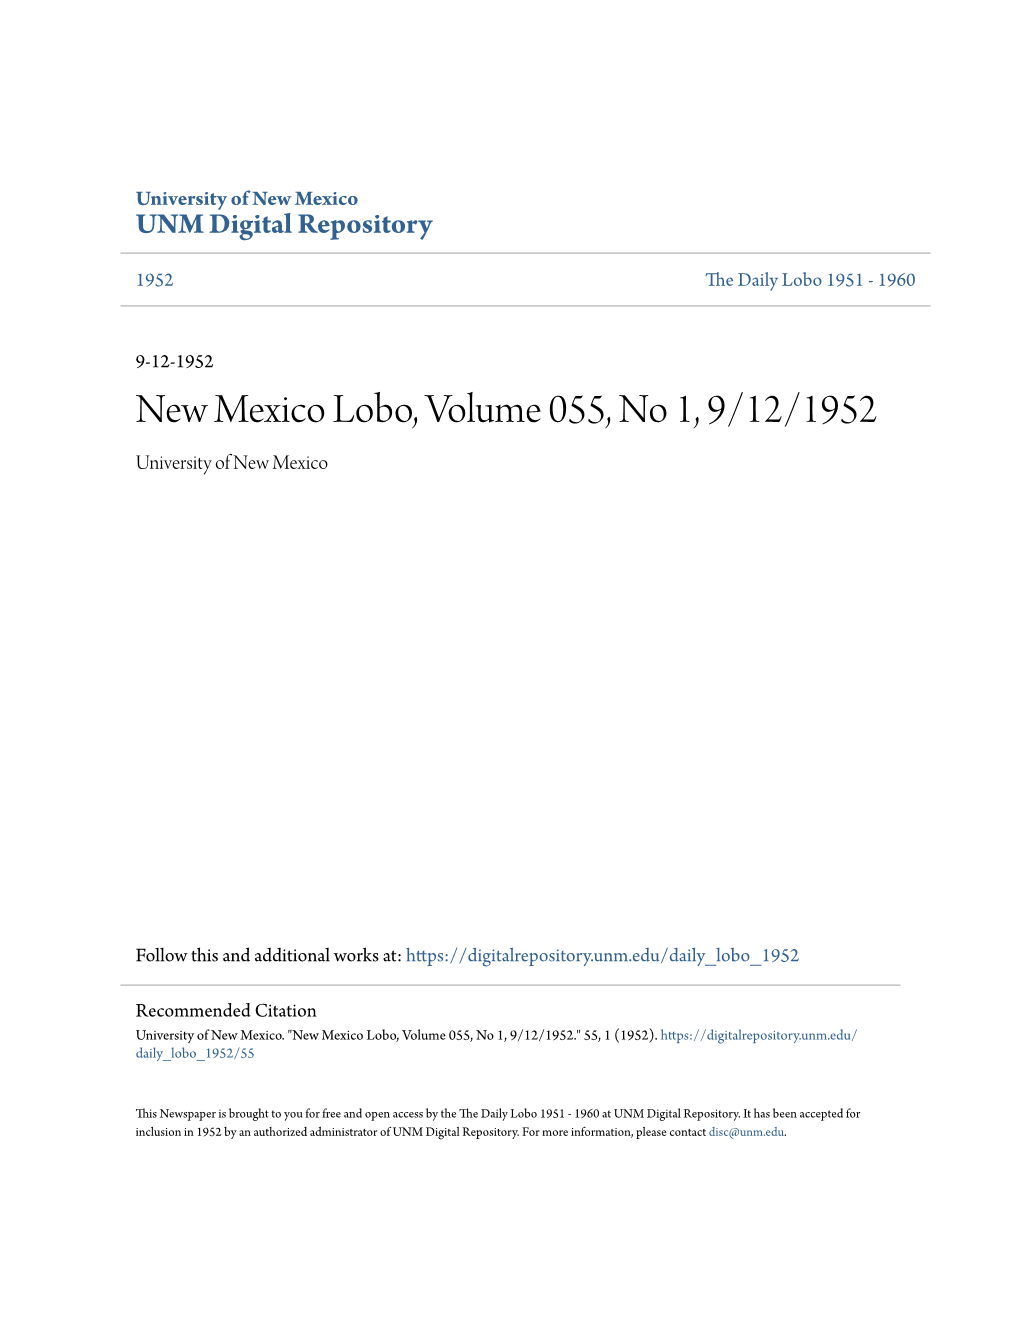 New Mexico Lobo, Volume 055, No 1, 9/12/1952 University of New Mexico